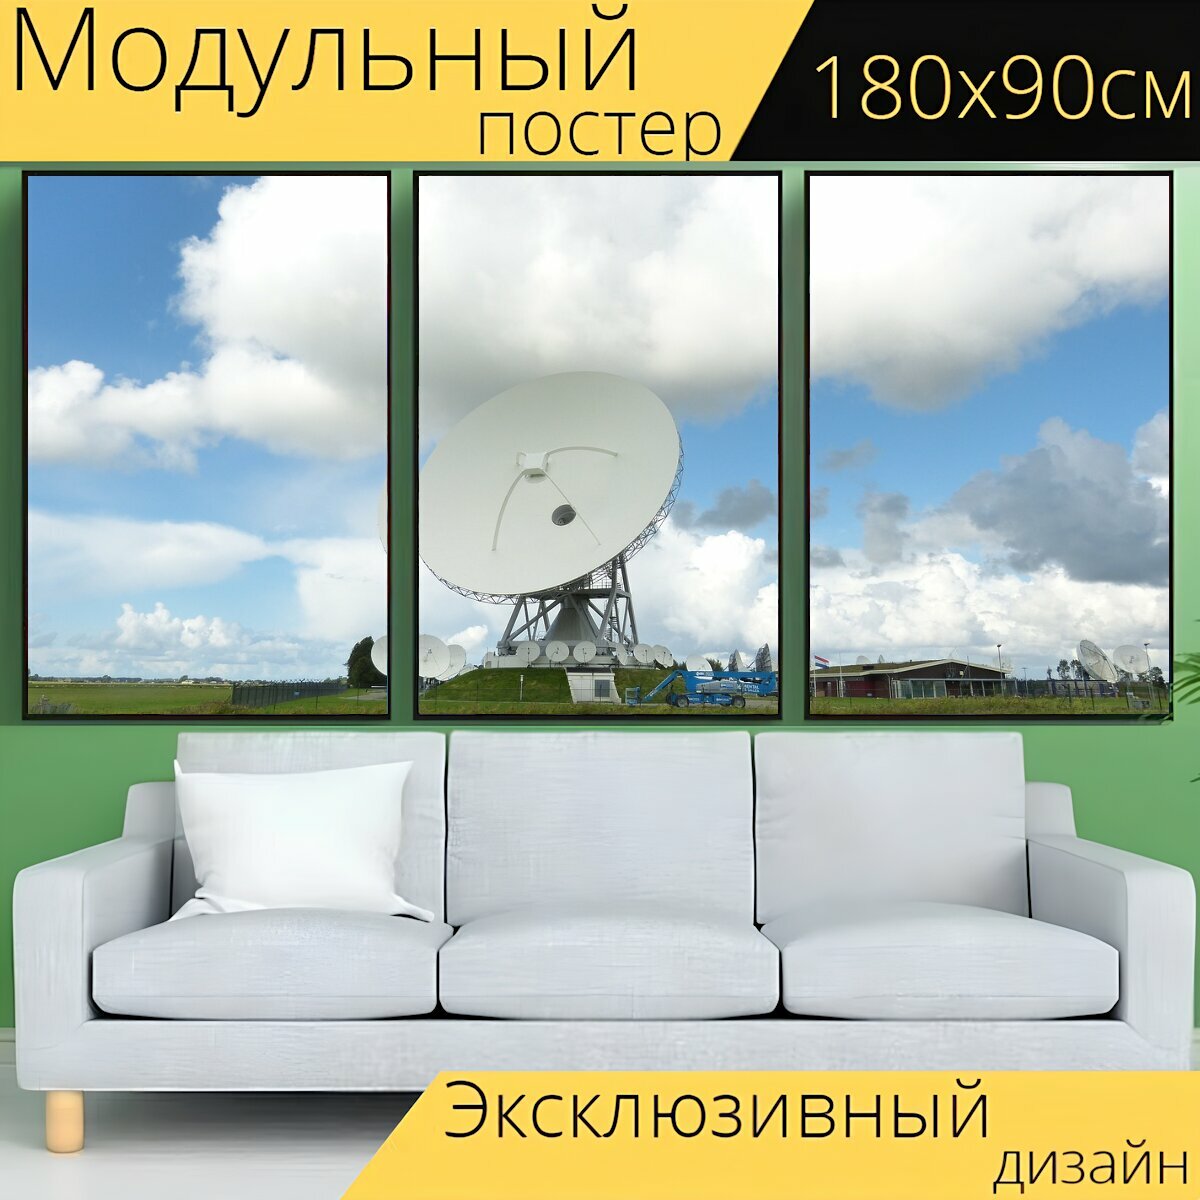 Модульный постер "Радиотелескоп, спутниковая тарелка, луг" 180 x 90 см. для интерьера